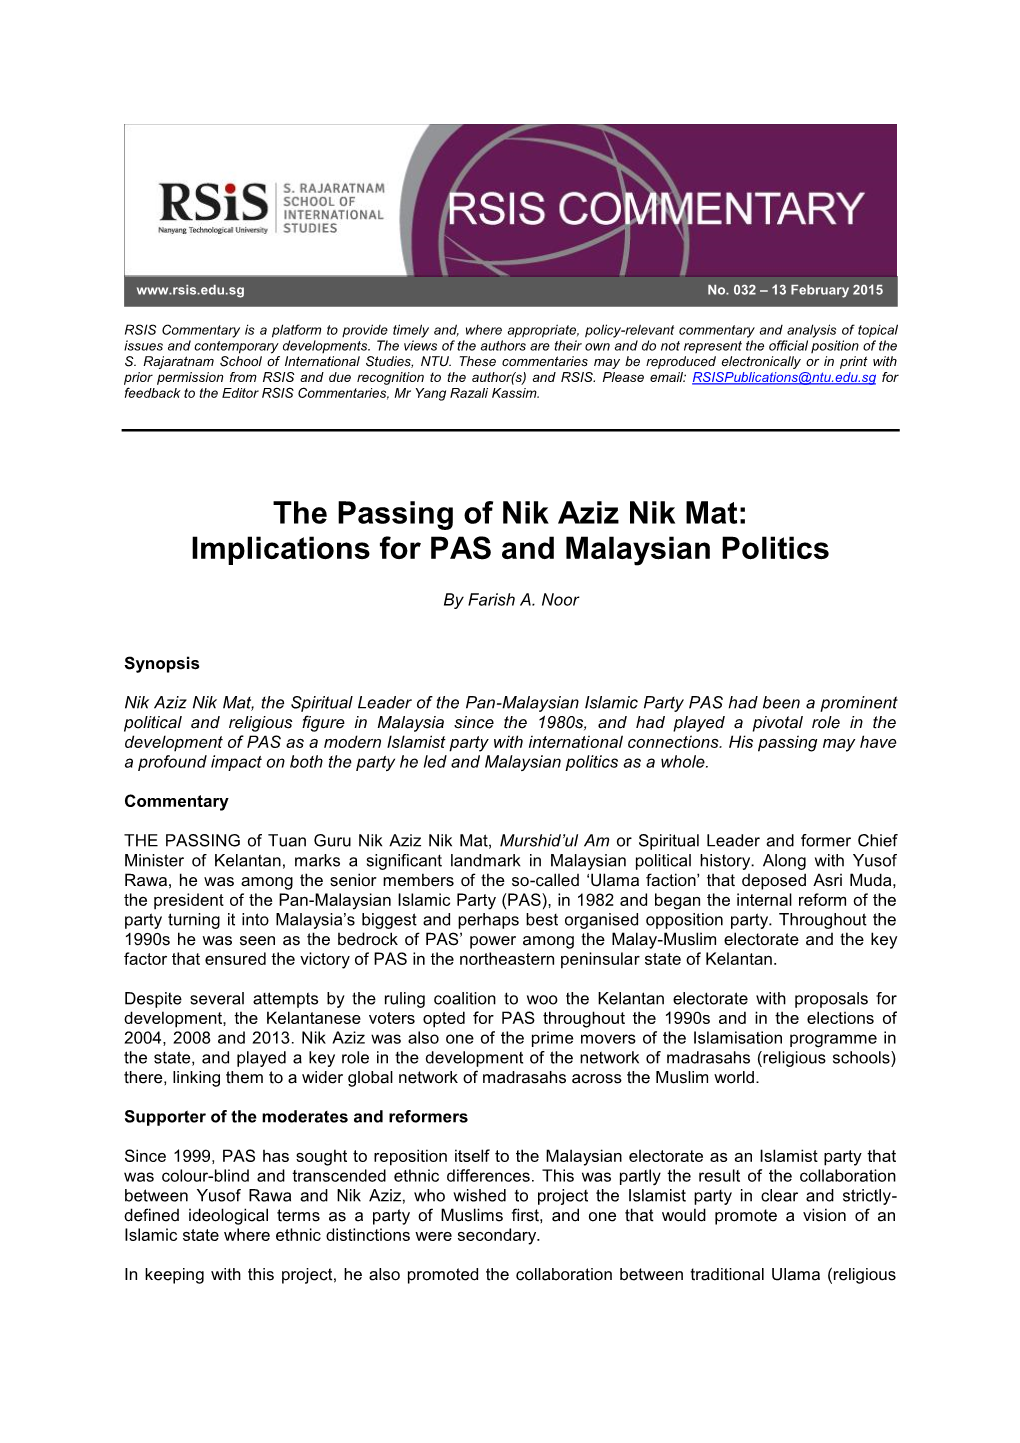 The Passing of Nik Aziz Nik Mat: Implications for PAS and Malaysian Politics